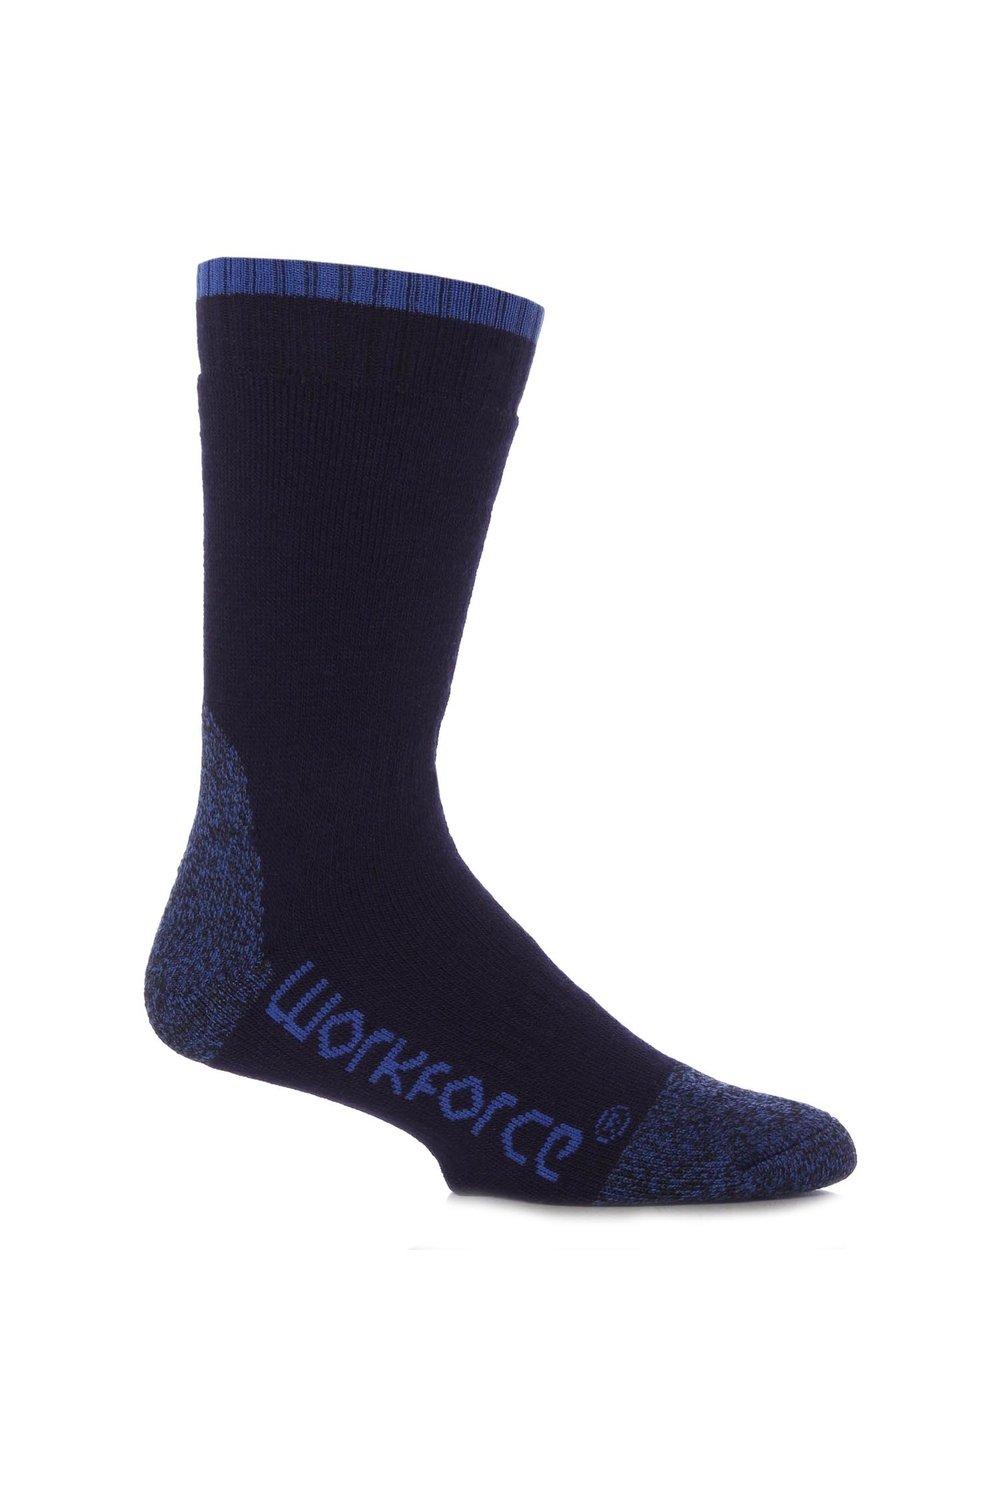 1 пара стальных защитных носков SOCKSHOP Workforce, синий 1 пара полосатых носков тапочек gripper со скидкой 25% на этот стиль sockshop синий